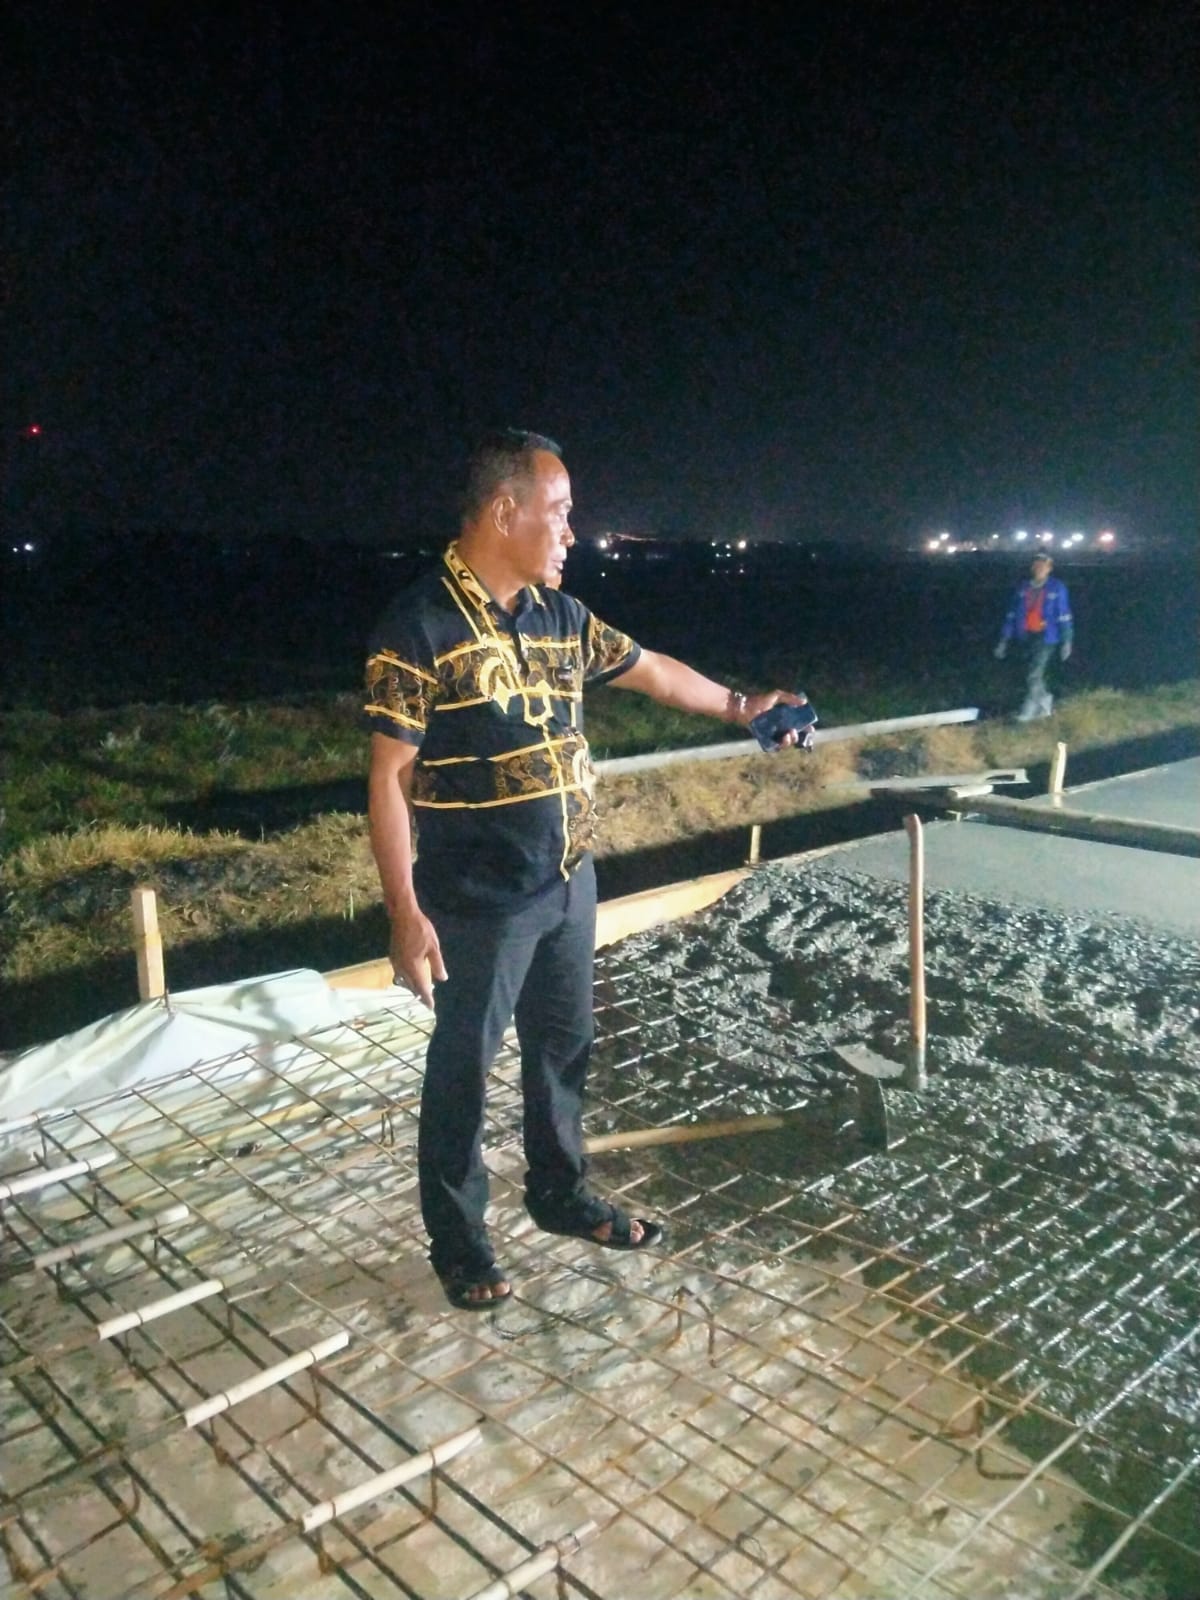 Kepala Desa Karangsari Tengah Malam, Turun Langsung Ke Lokasi Mengawasi Pengecoran Jalan di Wilayah Desanya.